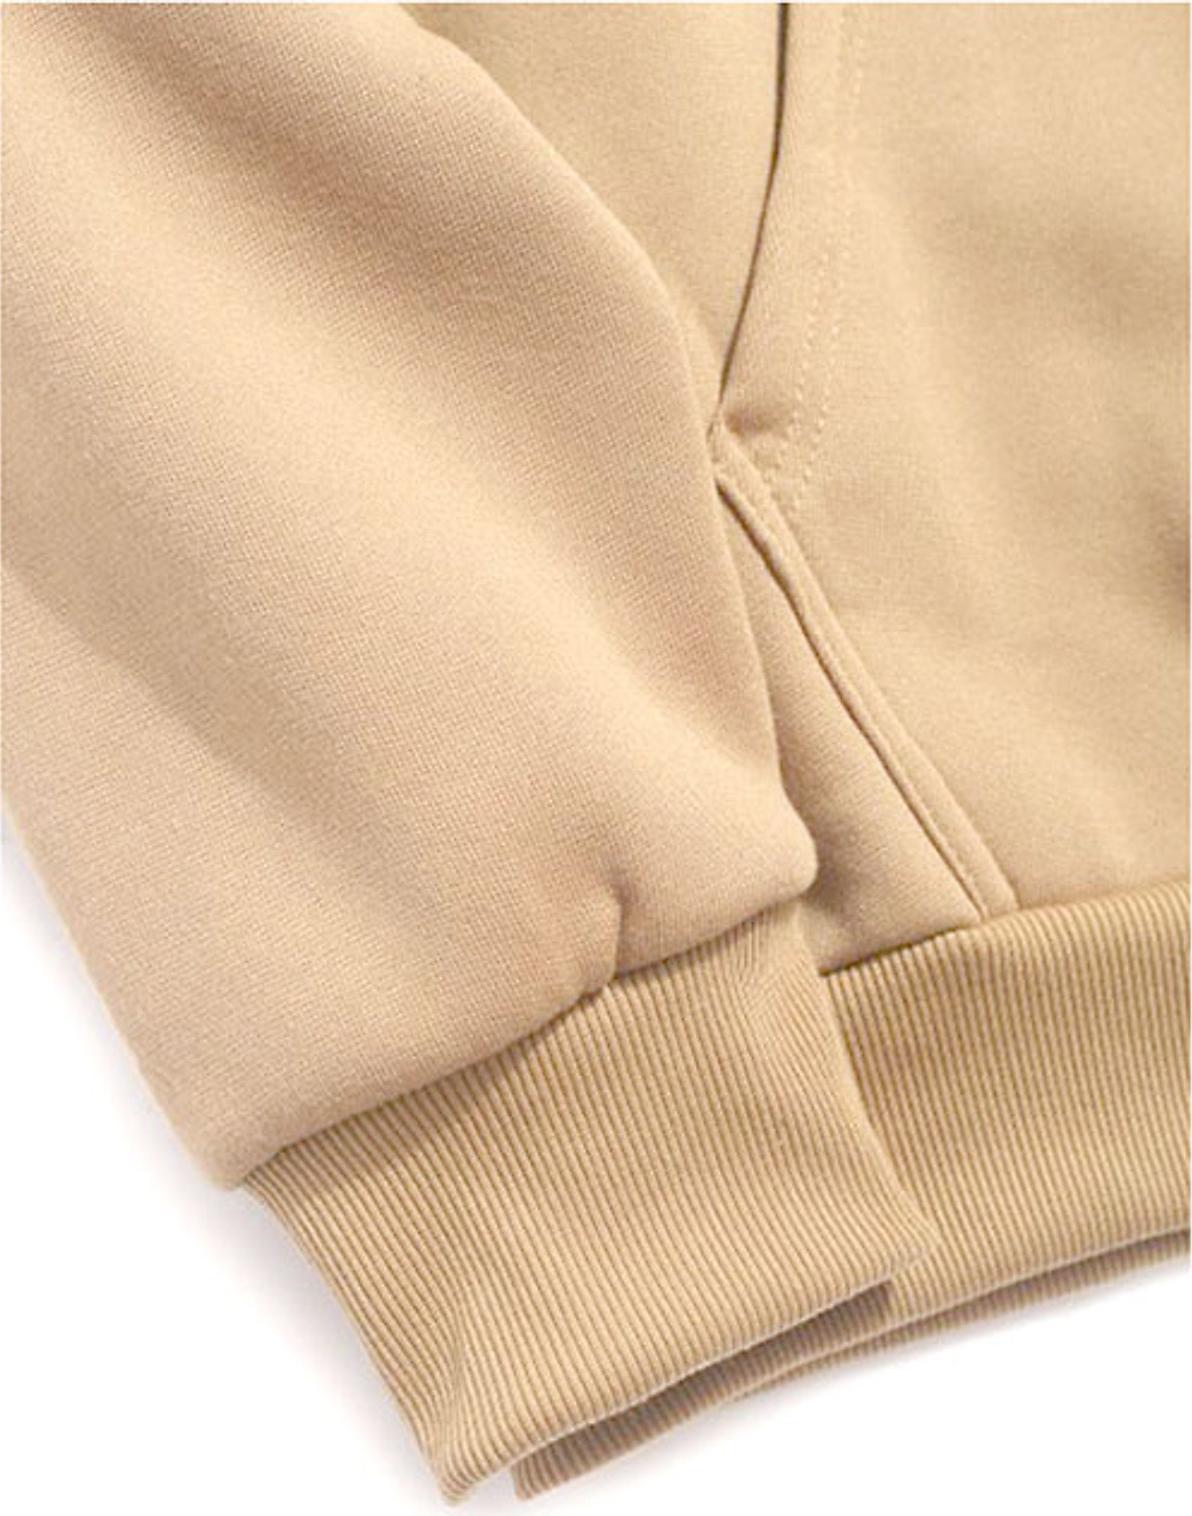 Áo hoodie nam nữ form rộng Unisex một màu cá tính Hàn Quốc – FORMEN SHOP – FM14GV016 - KEM - L